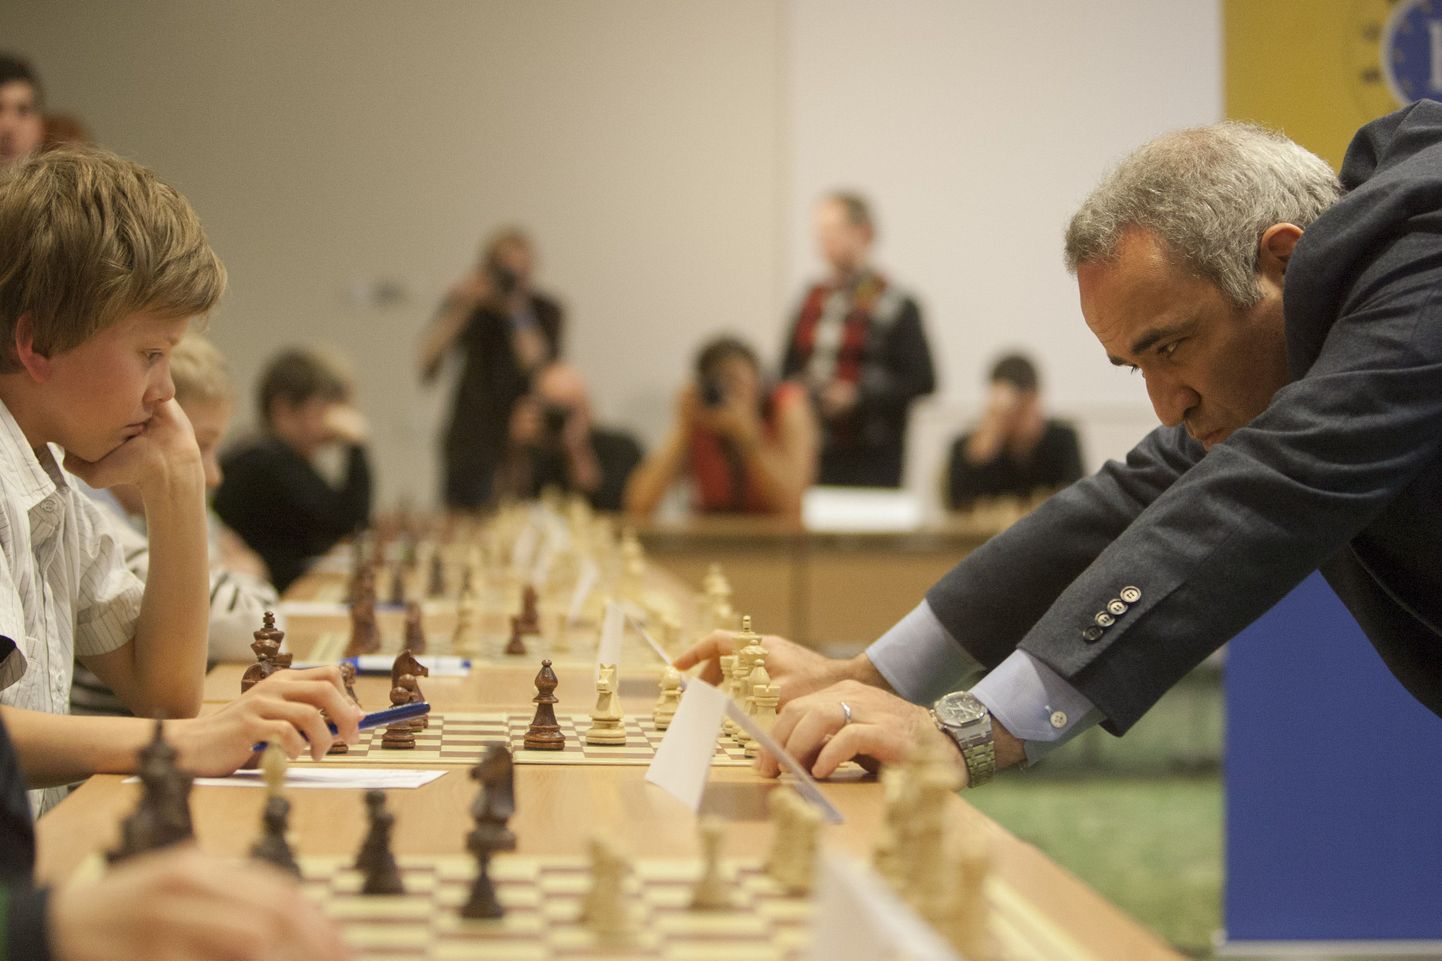 Гарри Каспаров в раздумьях над следующим ходом во время сеанса одновременной игры. В итоге раздумья привели гроссмейстера к двум ничьим с 13-летним Ильей Сирошем из Силламяэ и 14-летним чемпионом Эстонии по быстрым шахматам Оттомаром Ладва.